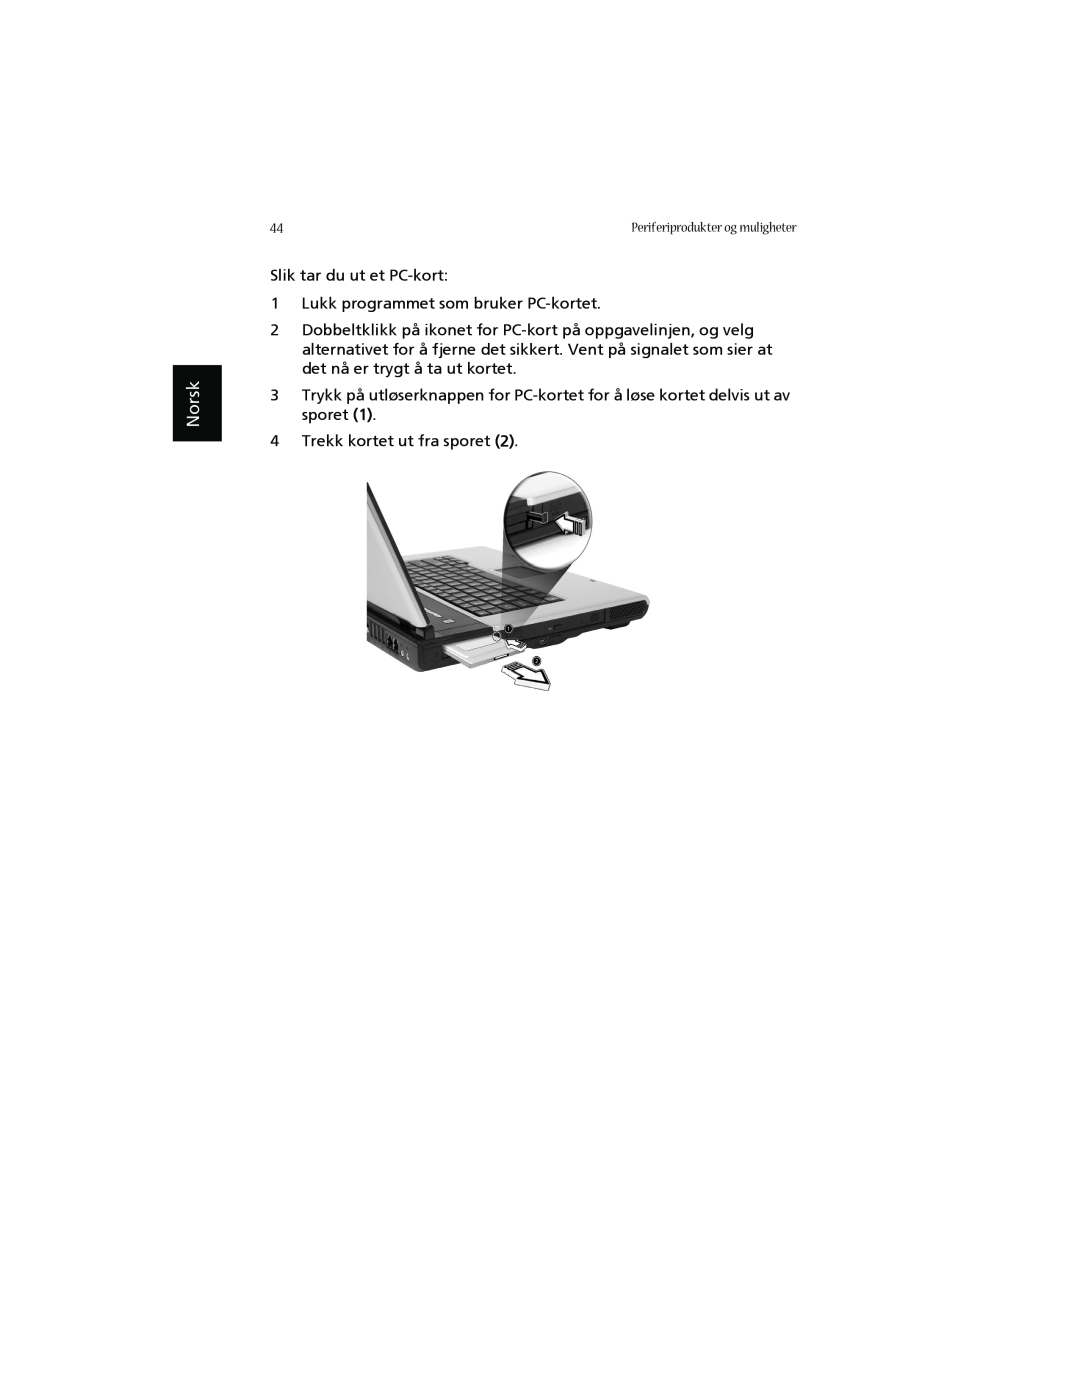 Acer 1660 manual Norsk, Slik tar du ut et PC-kort 1 Lukk programmet som bruker PC-kortet, Trekk kortet ut fra sporet 